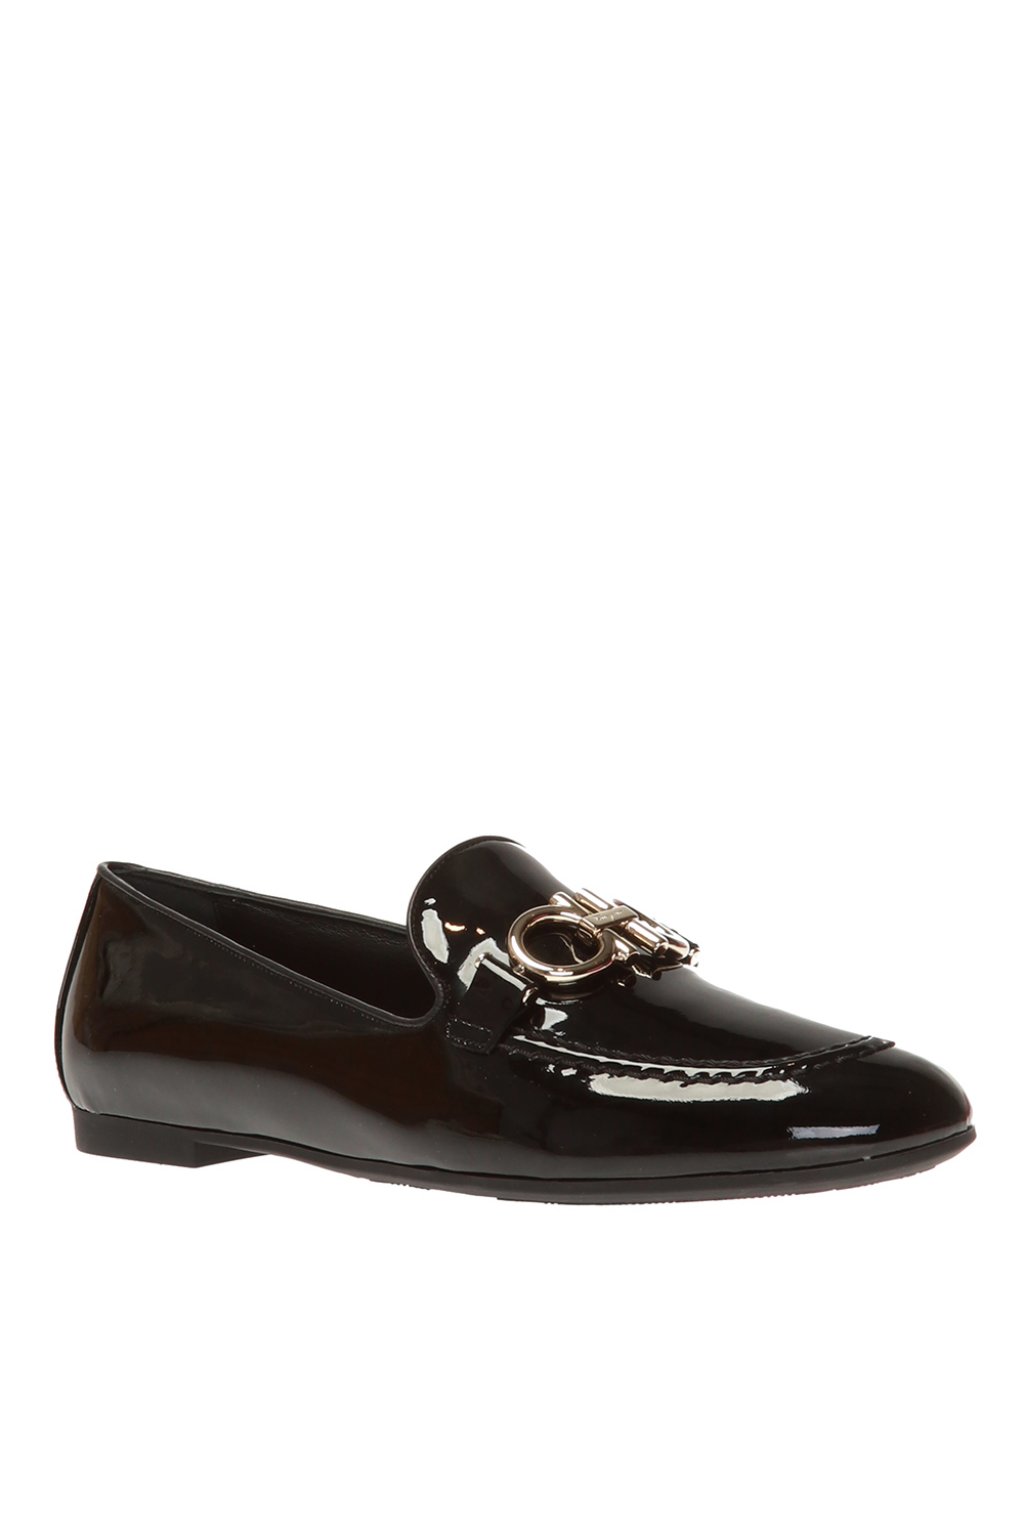 Salvatore Ferragamo 'Trifoglio' loafers | Women's Shoes | Vitkac